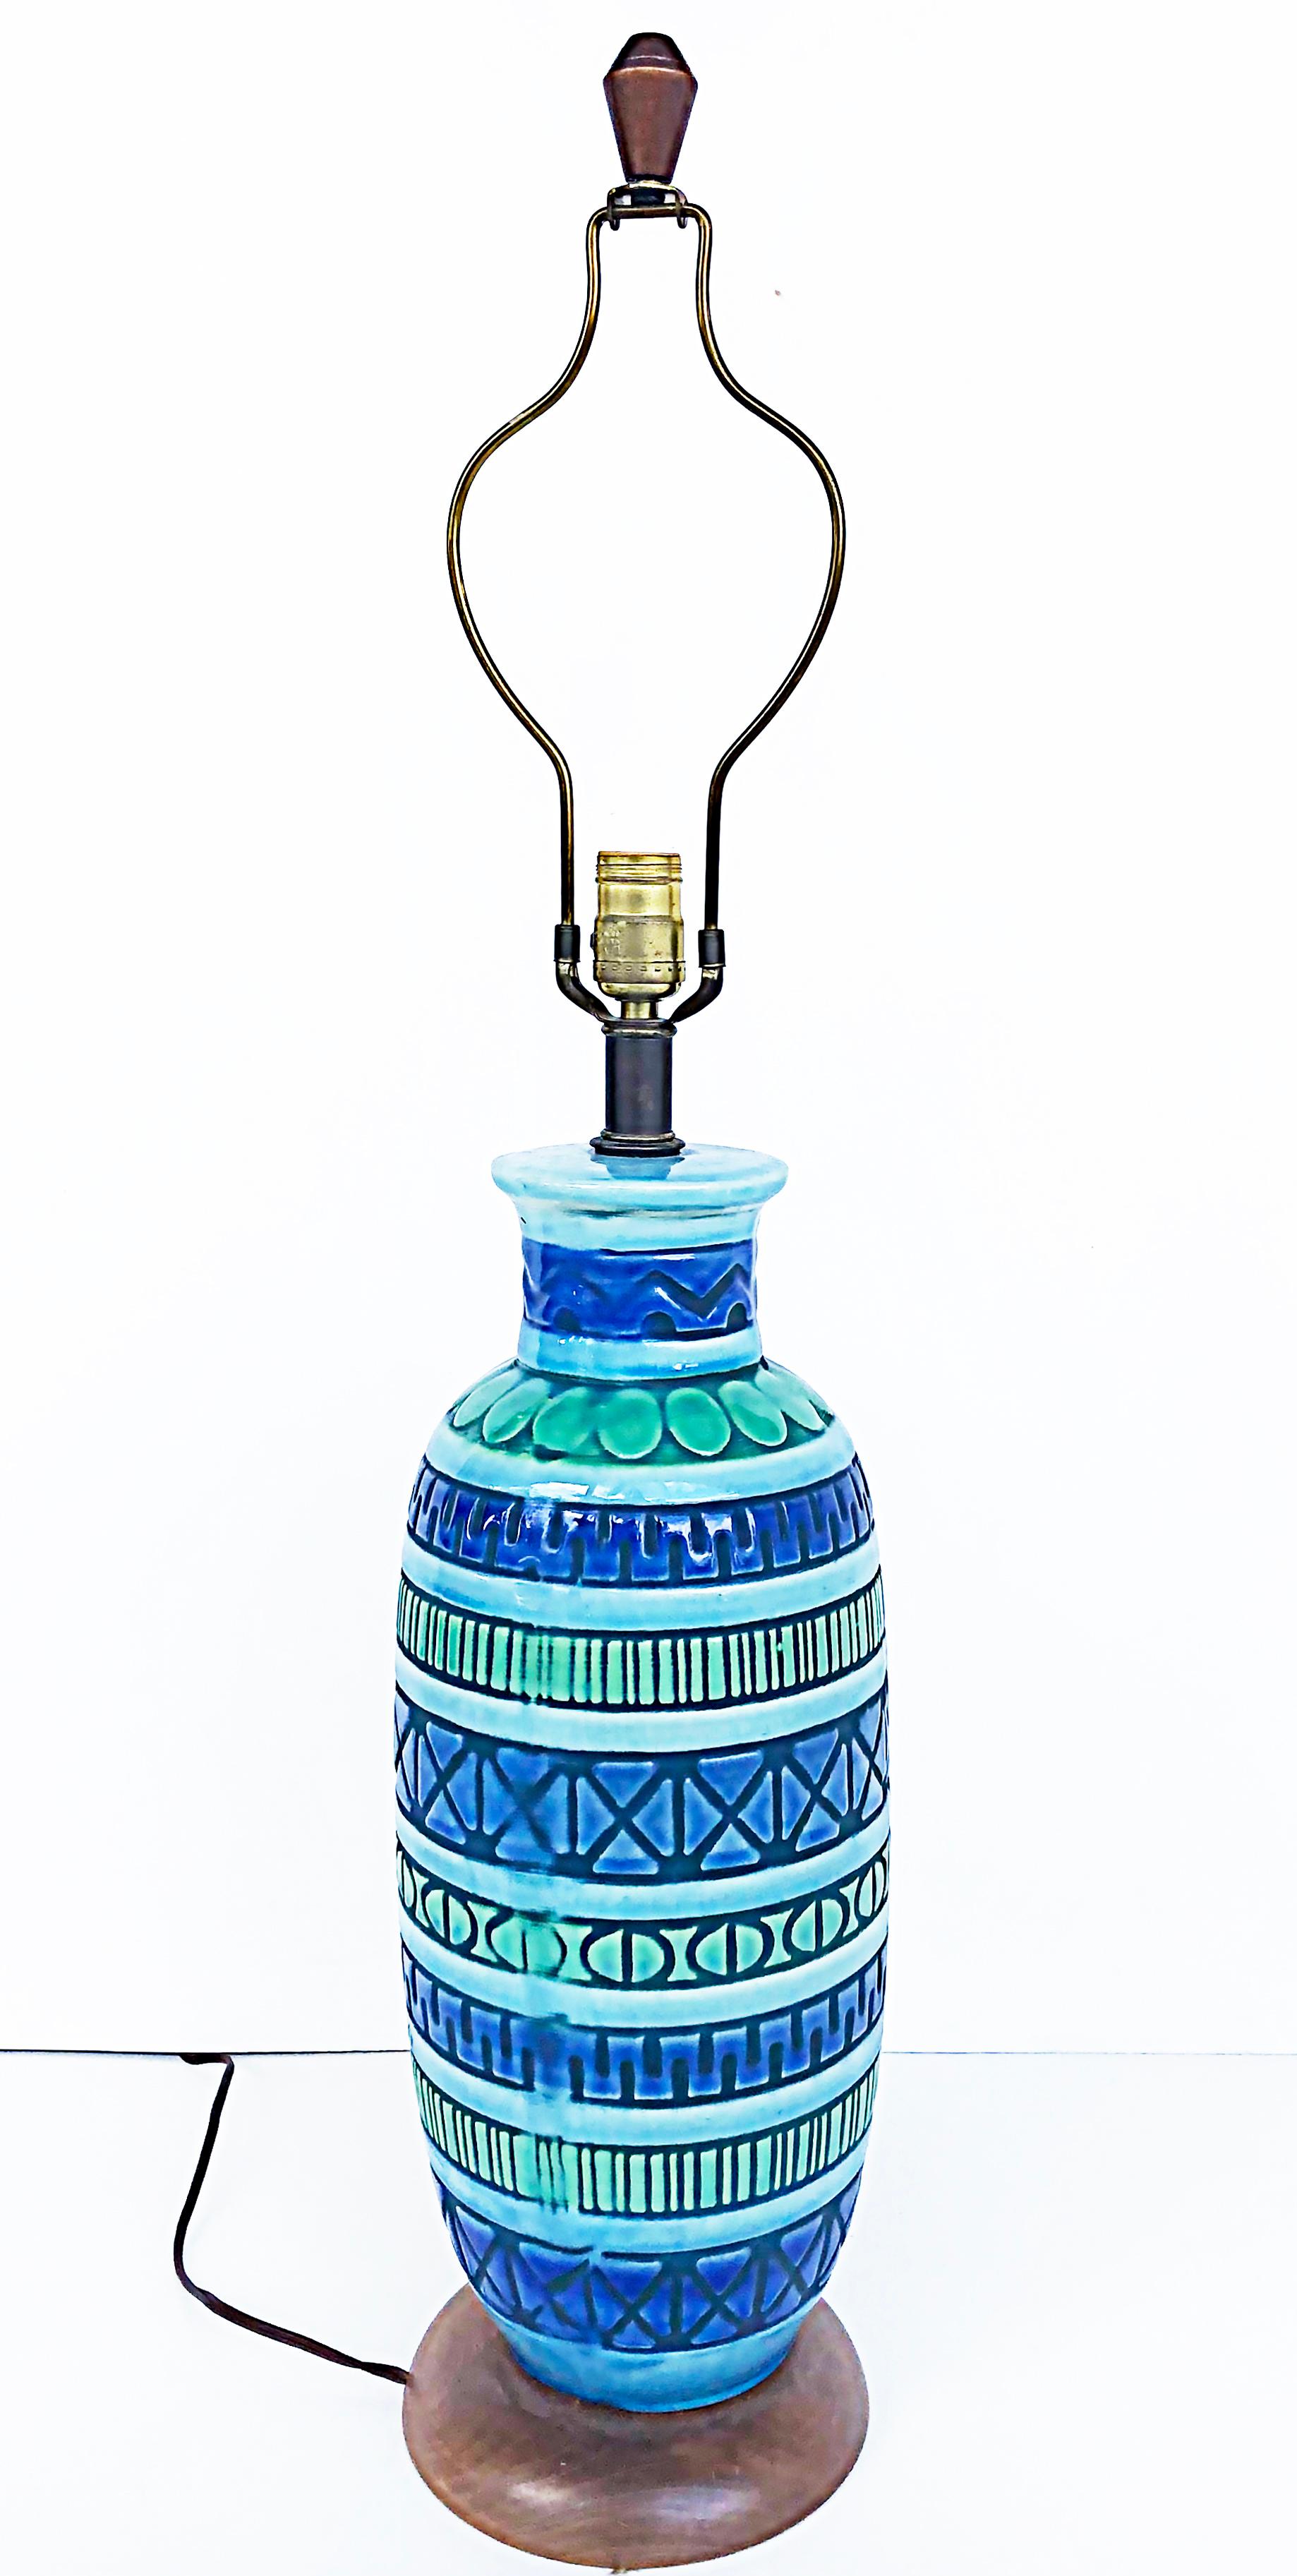 Moderne Keramik-Tischlampen aus der Jahrhundertmitte, Bitossi Manier.

Zum Verkauf angeboten wird ein Paar von Mid-Century Modern glasierte Keramik-Lampen in der Art von Aldo Londi Bitossi erstellt. Die Lampen haben in den Ton eingeritzte